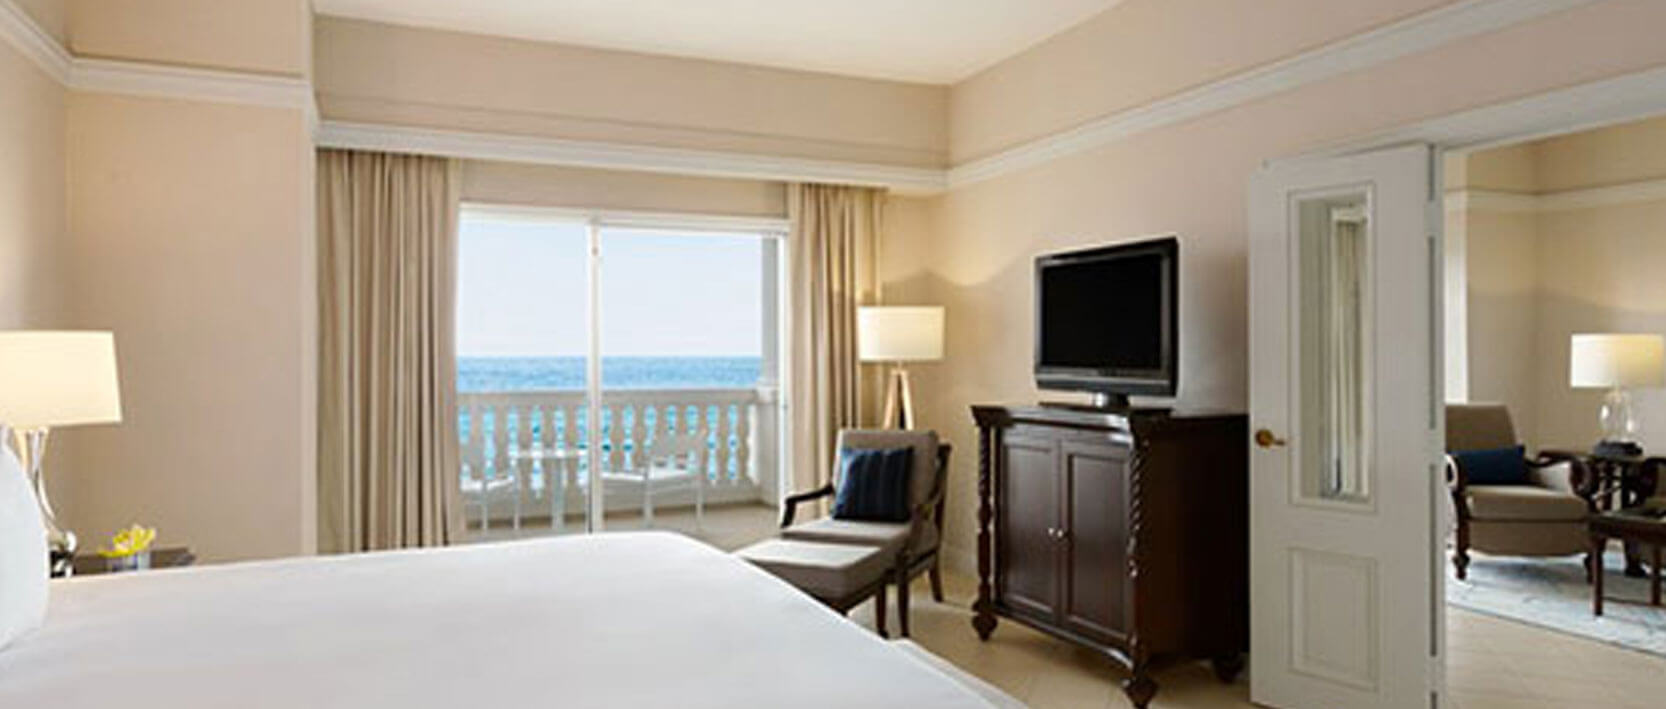 Hyatt Zilara Rose Hall Accommodations - One-Bedroom Oceanfront Butler Suite